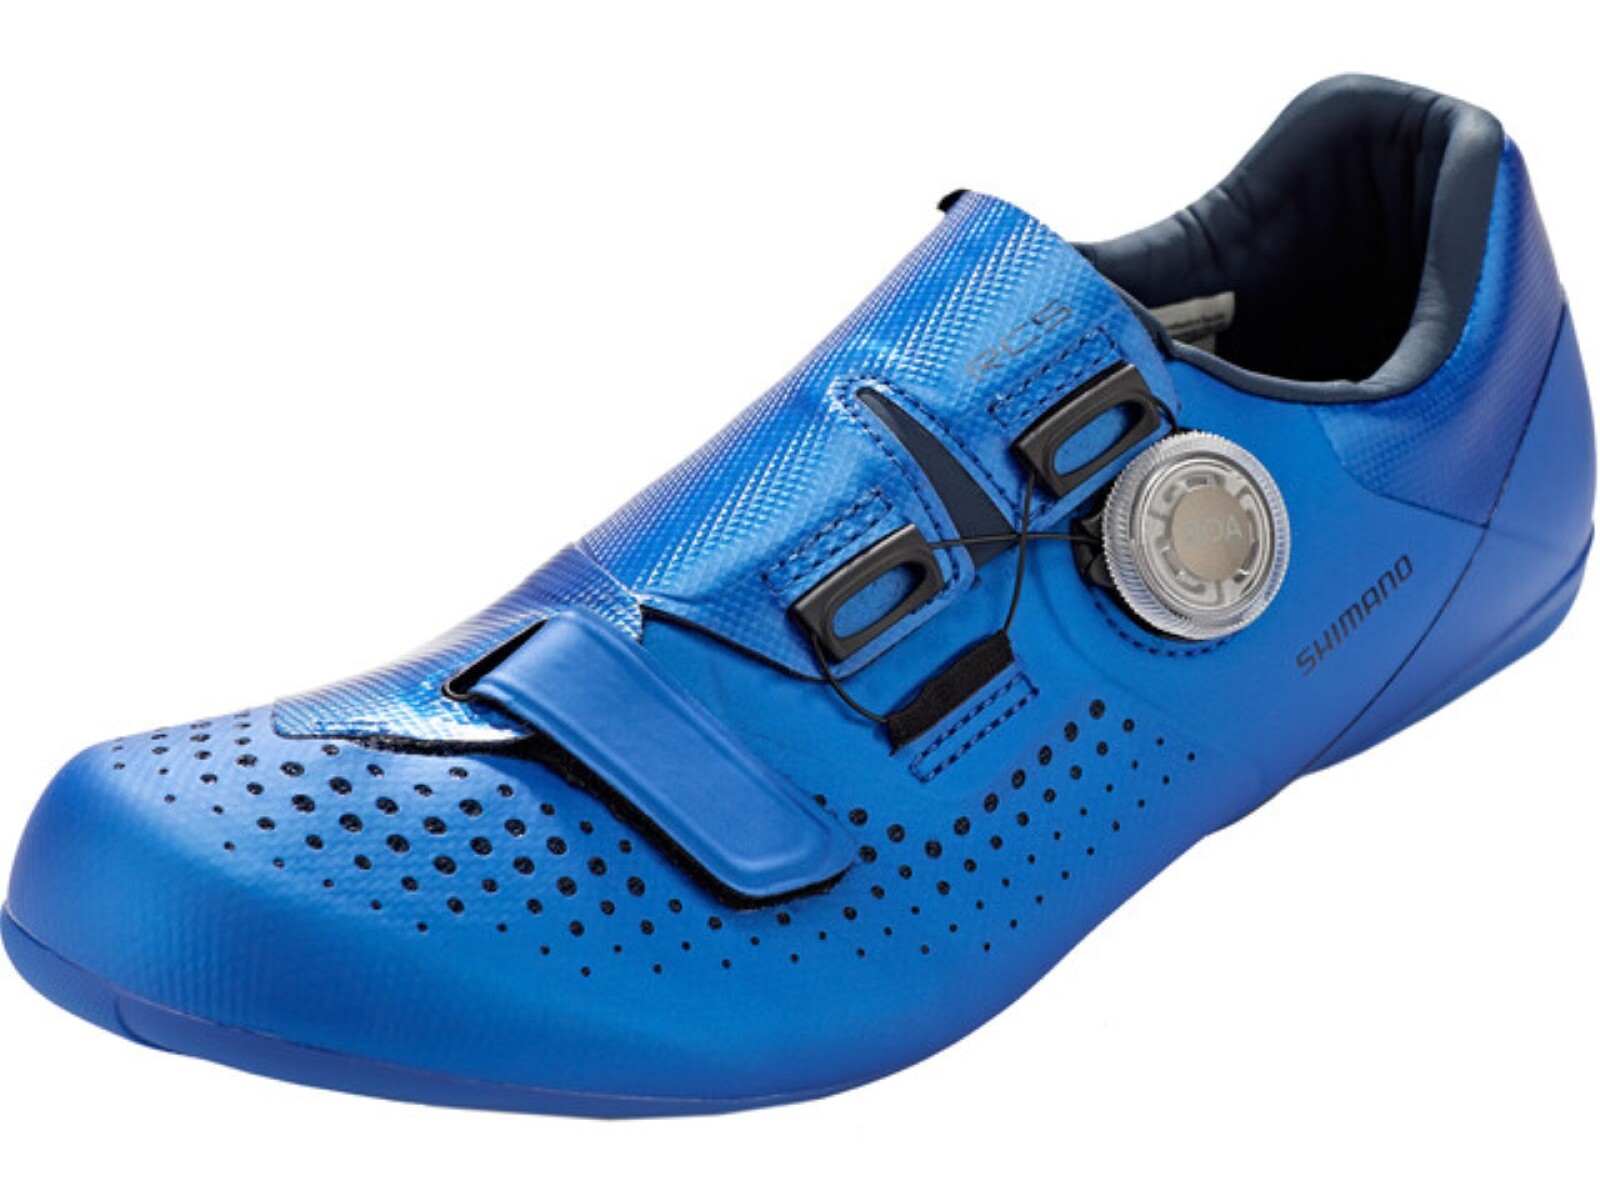 Zapatillas Shimano Rc500 - Azul 